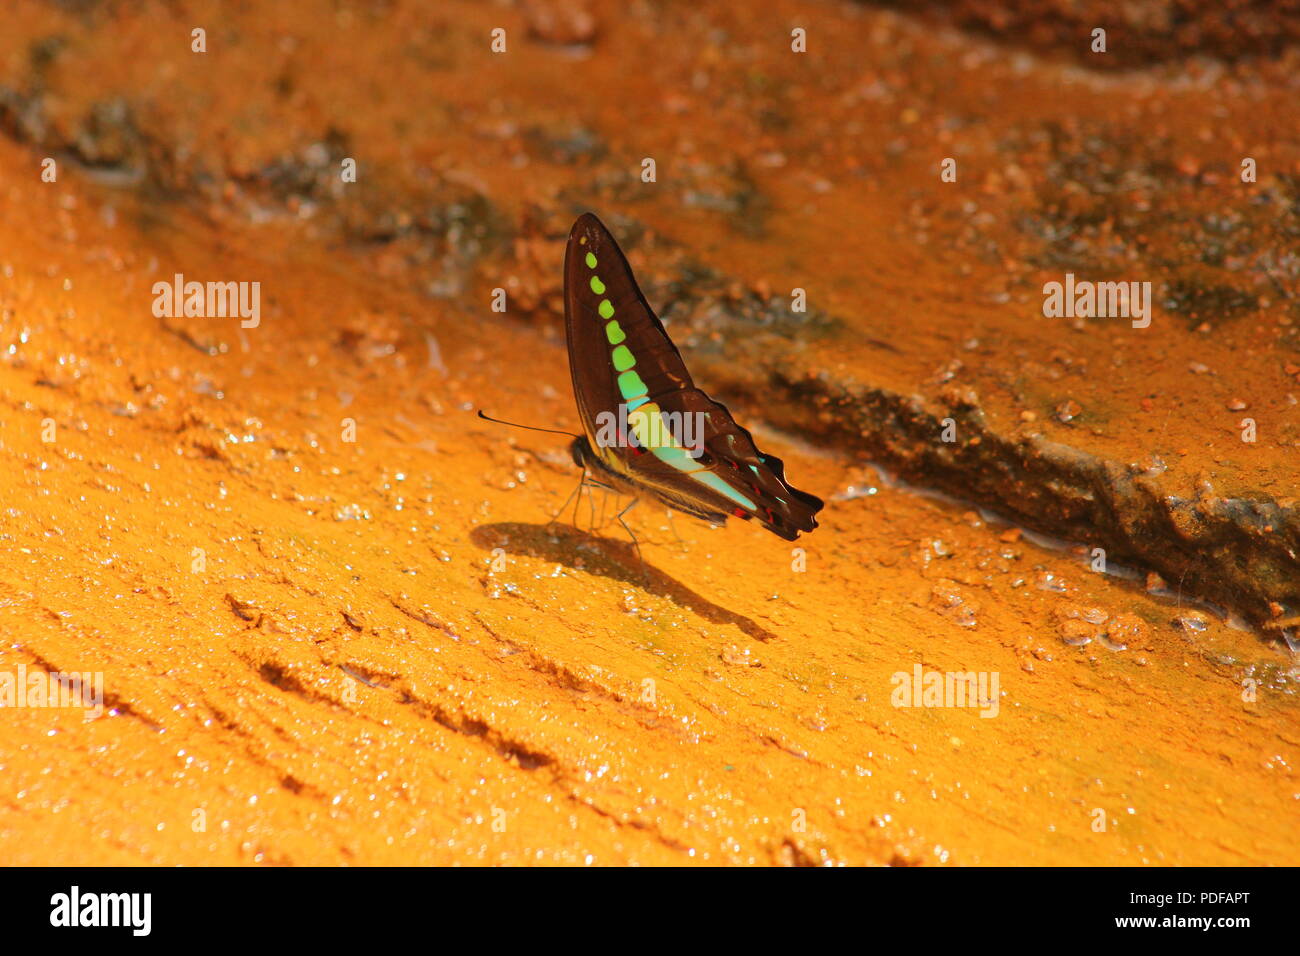 Schmetterlinge sind Insekten in den Macrolepidopteran Clade Rhopalocera aus dem Auftrag Lepidoptera, beinhaltet auch Motten. Stockfoto